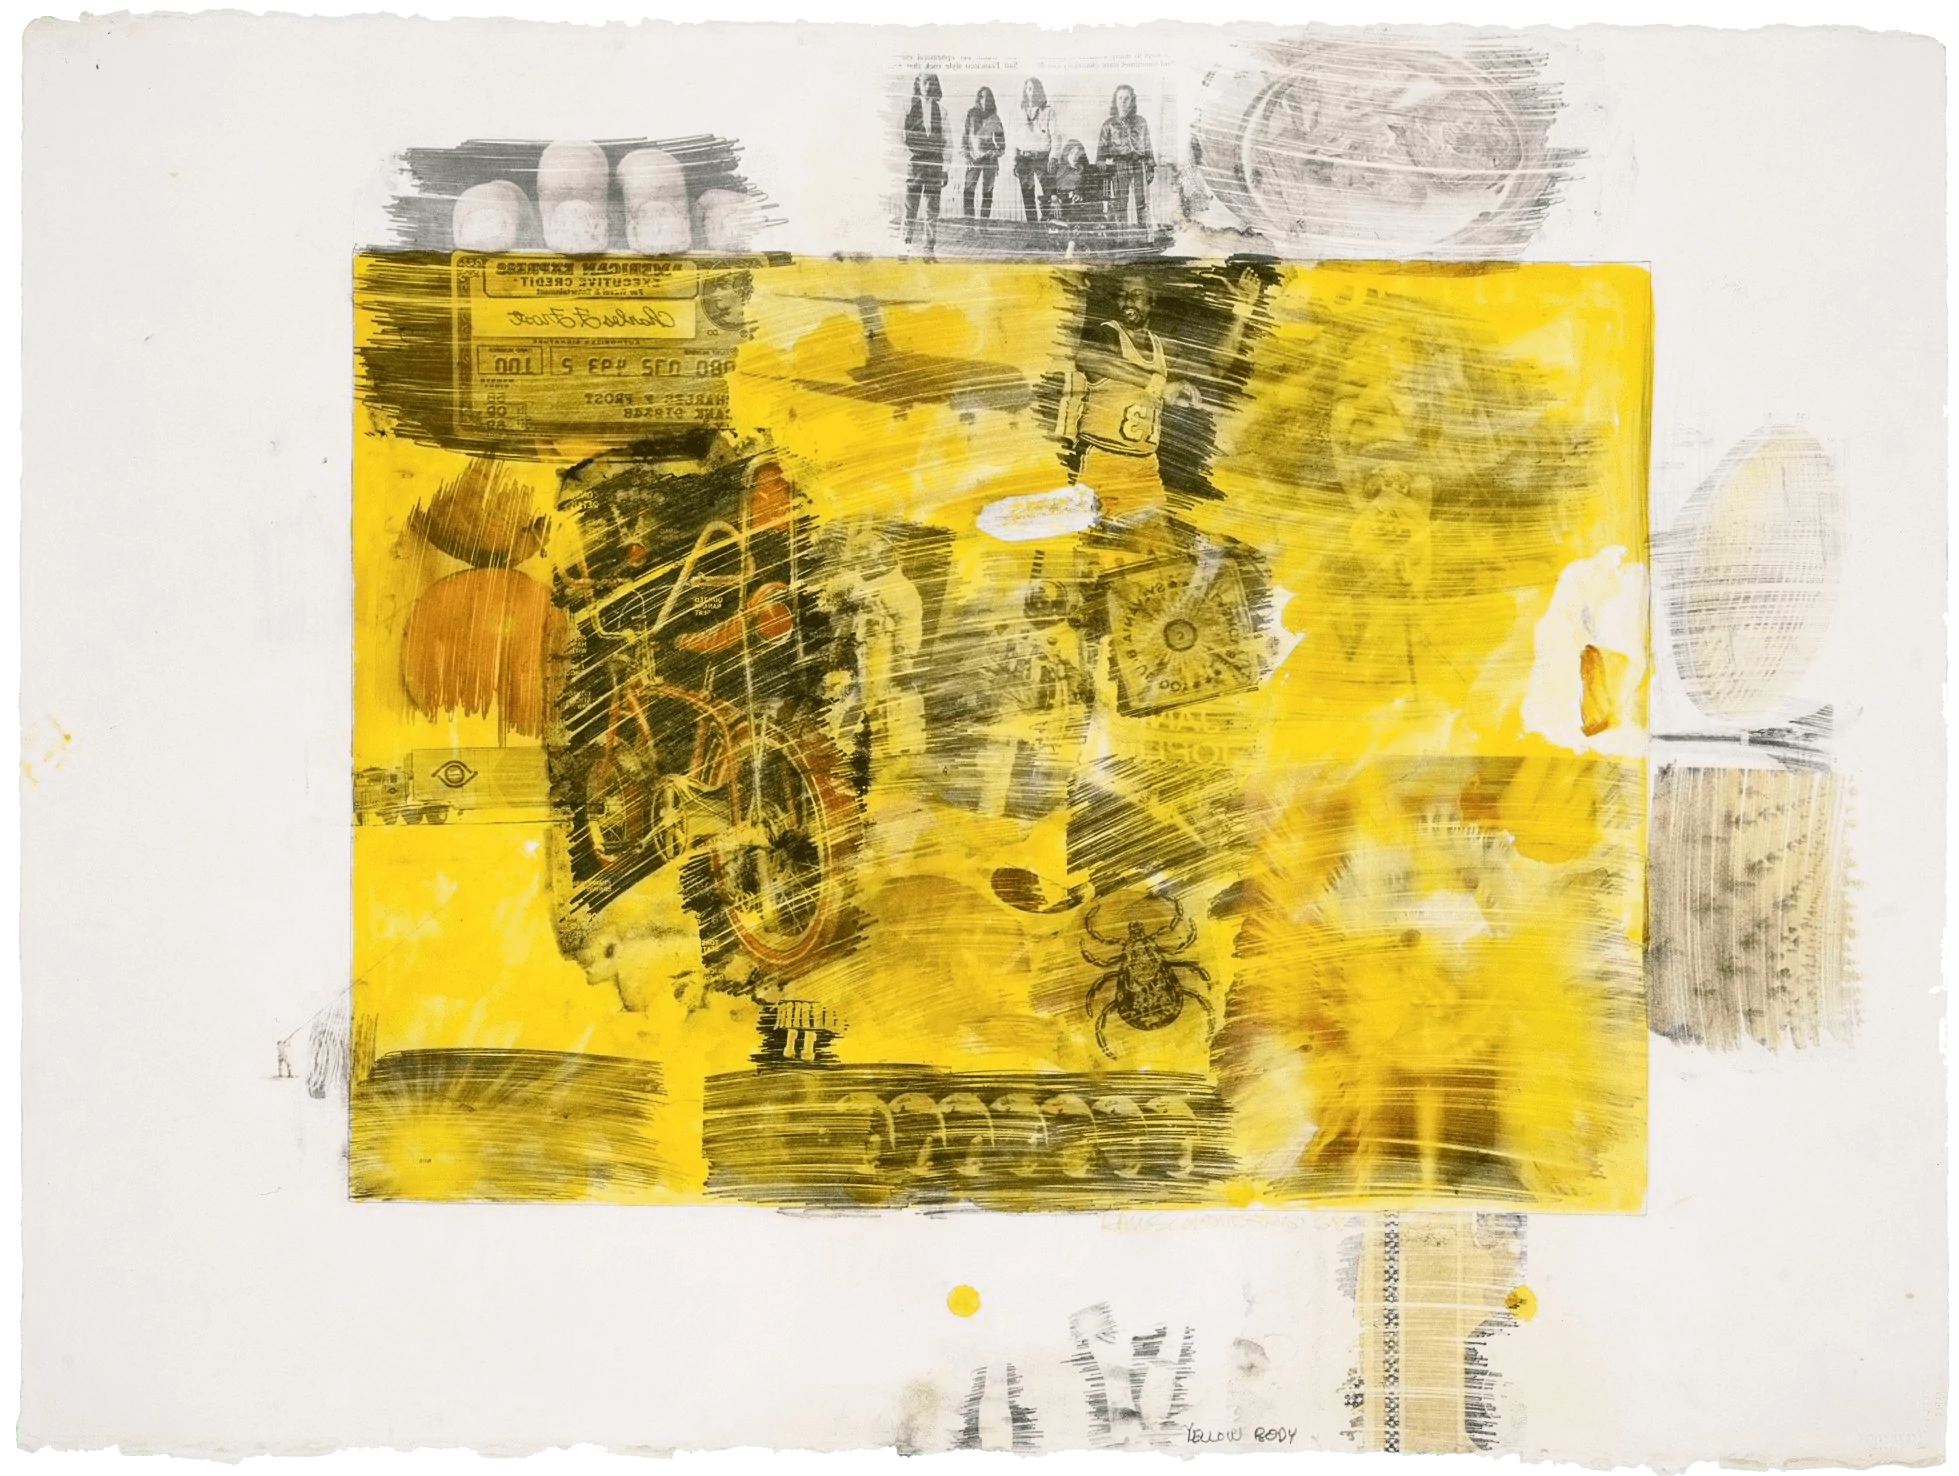 Yellow Body, Robert Rauschenberg